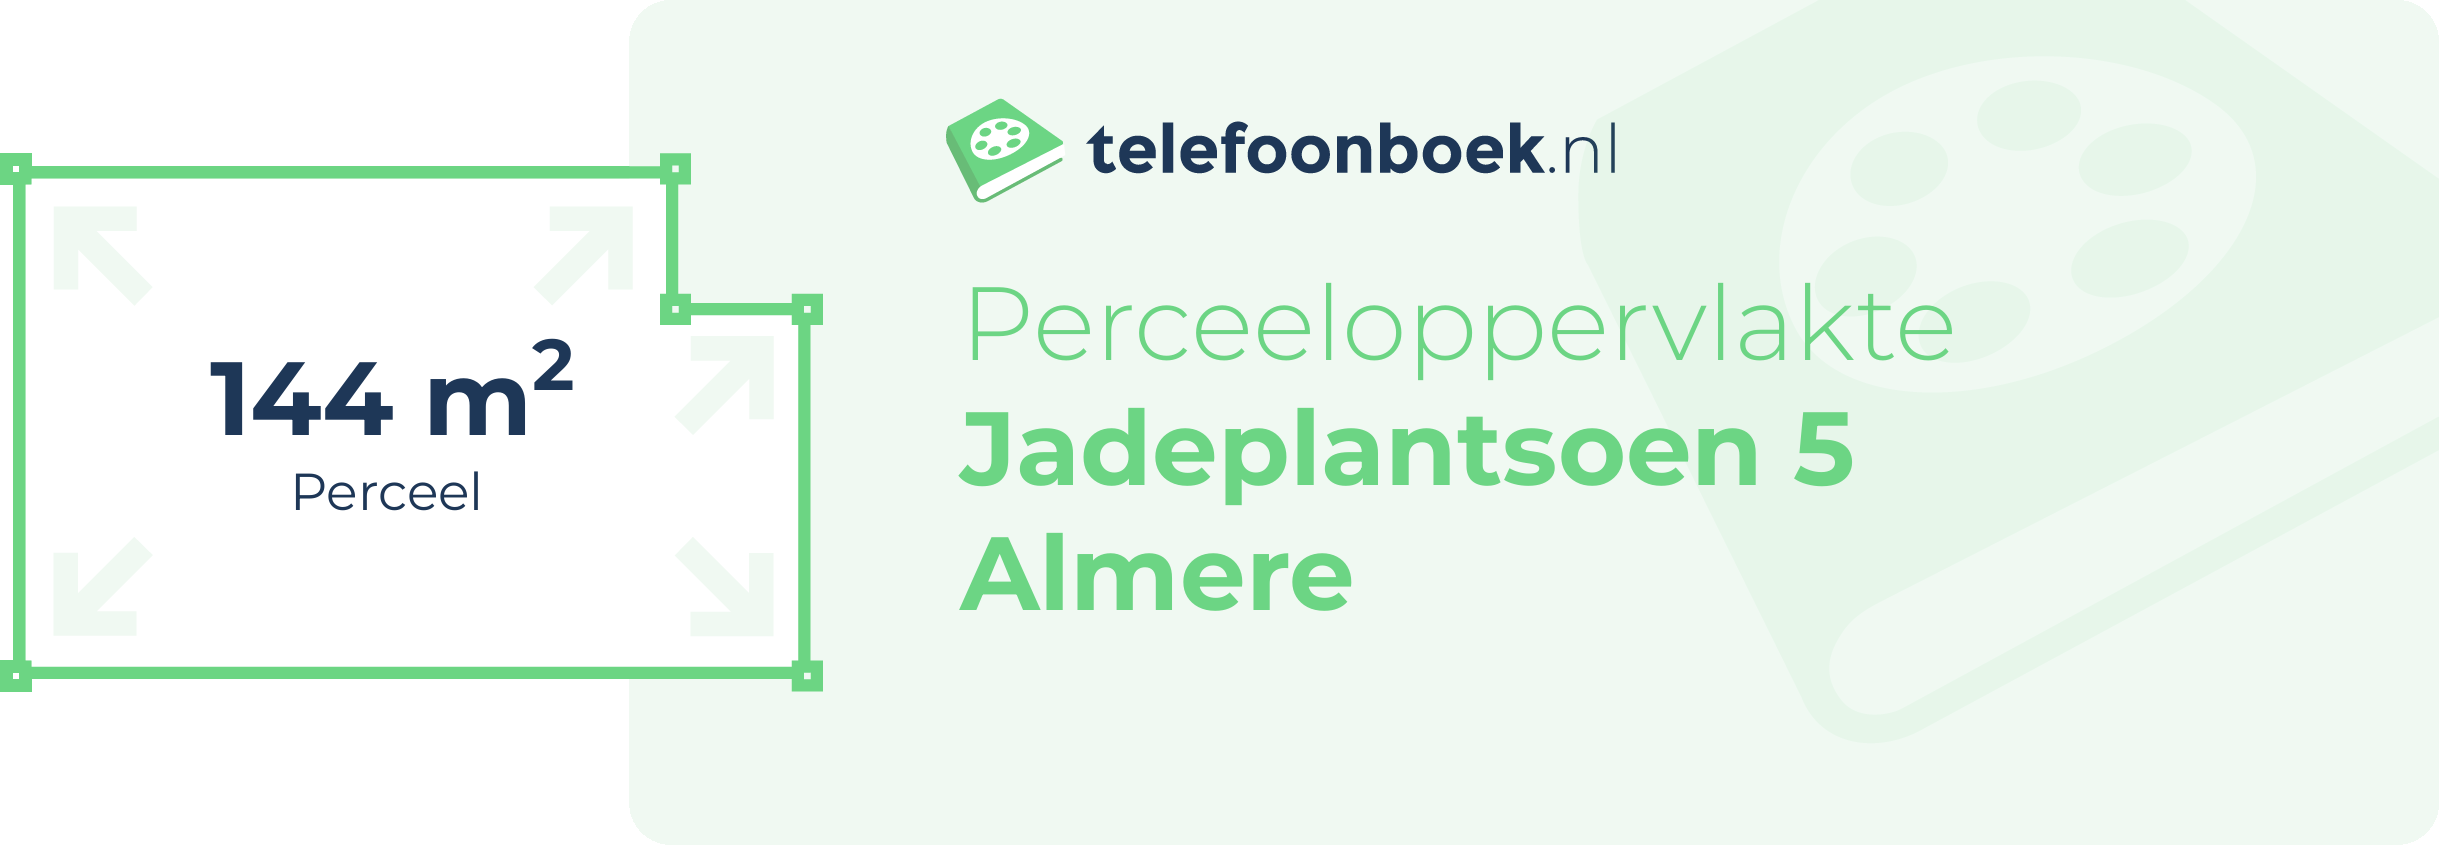 Perceeloppervlakte Jadeplantsoen 5 Almere